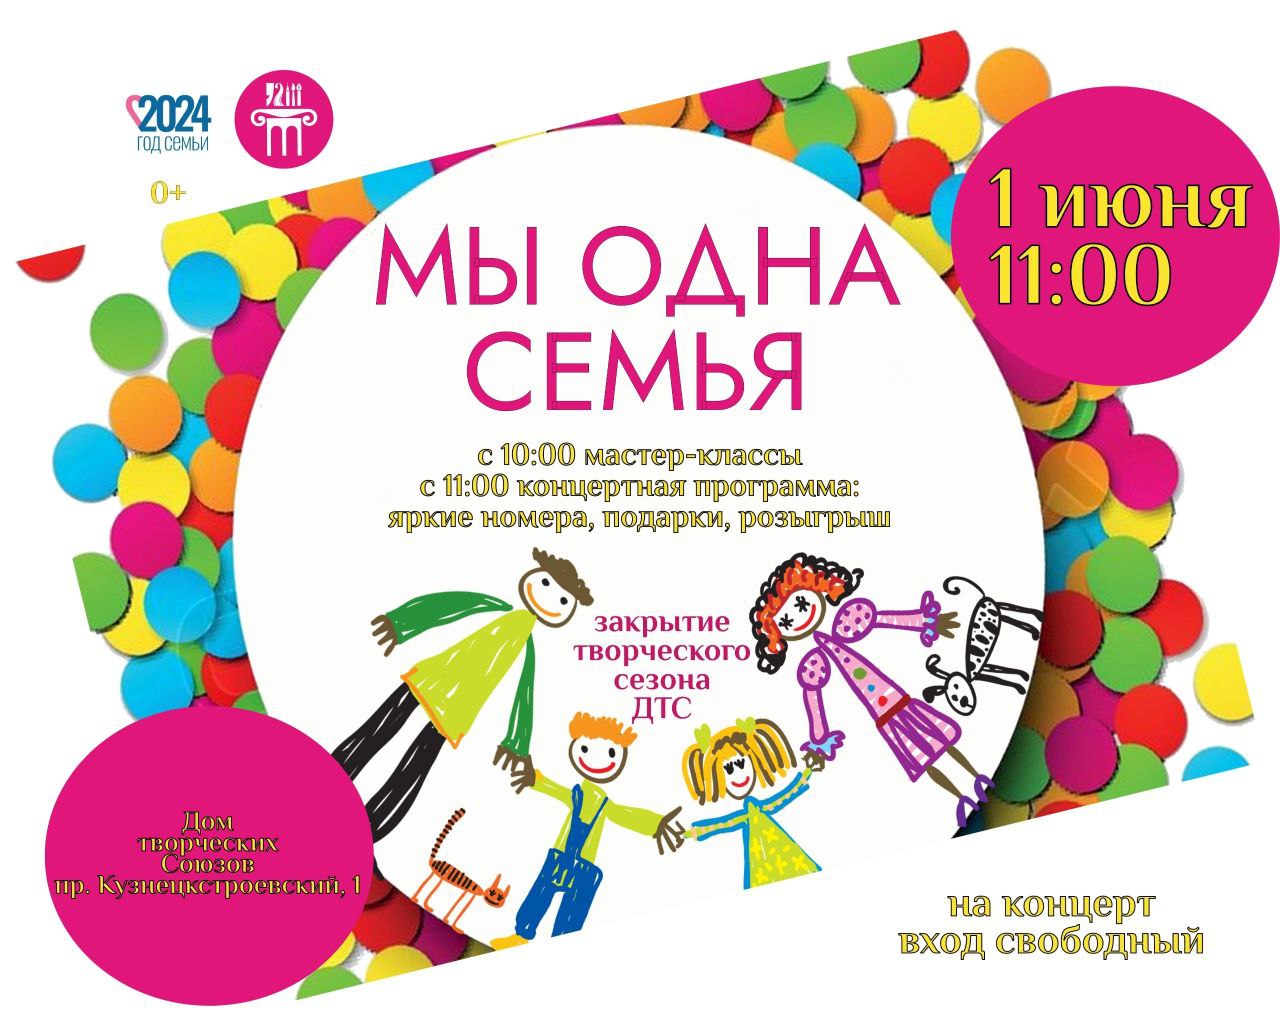 Фестивали, мастер-классы и соревнования устроят для юных новокузнечан в День защиты детей